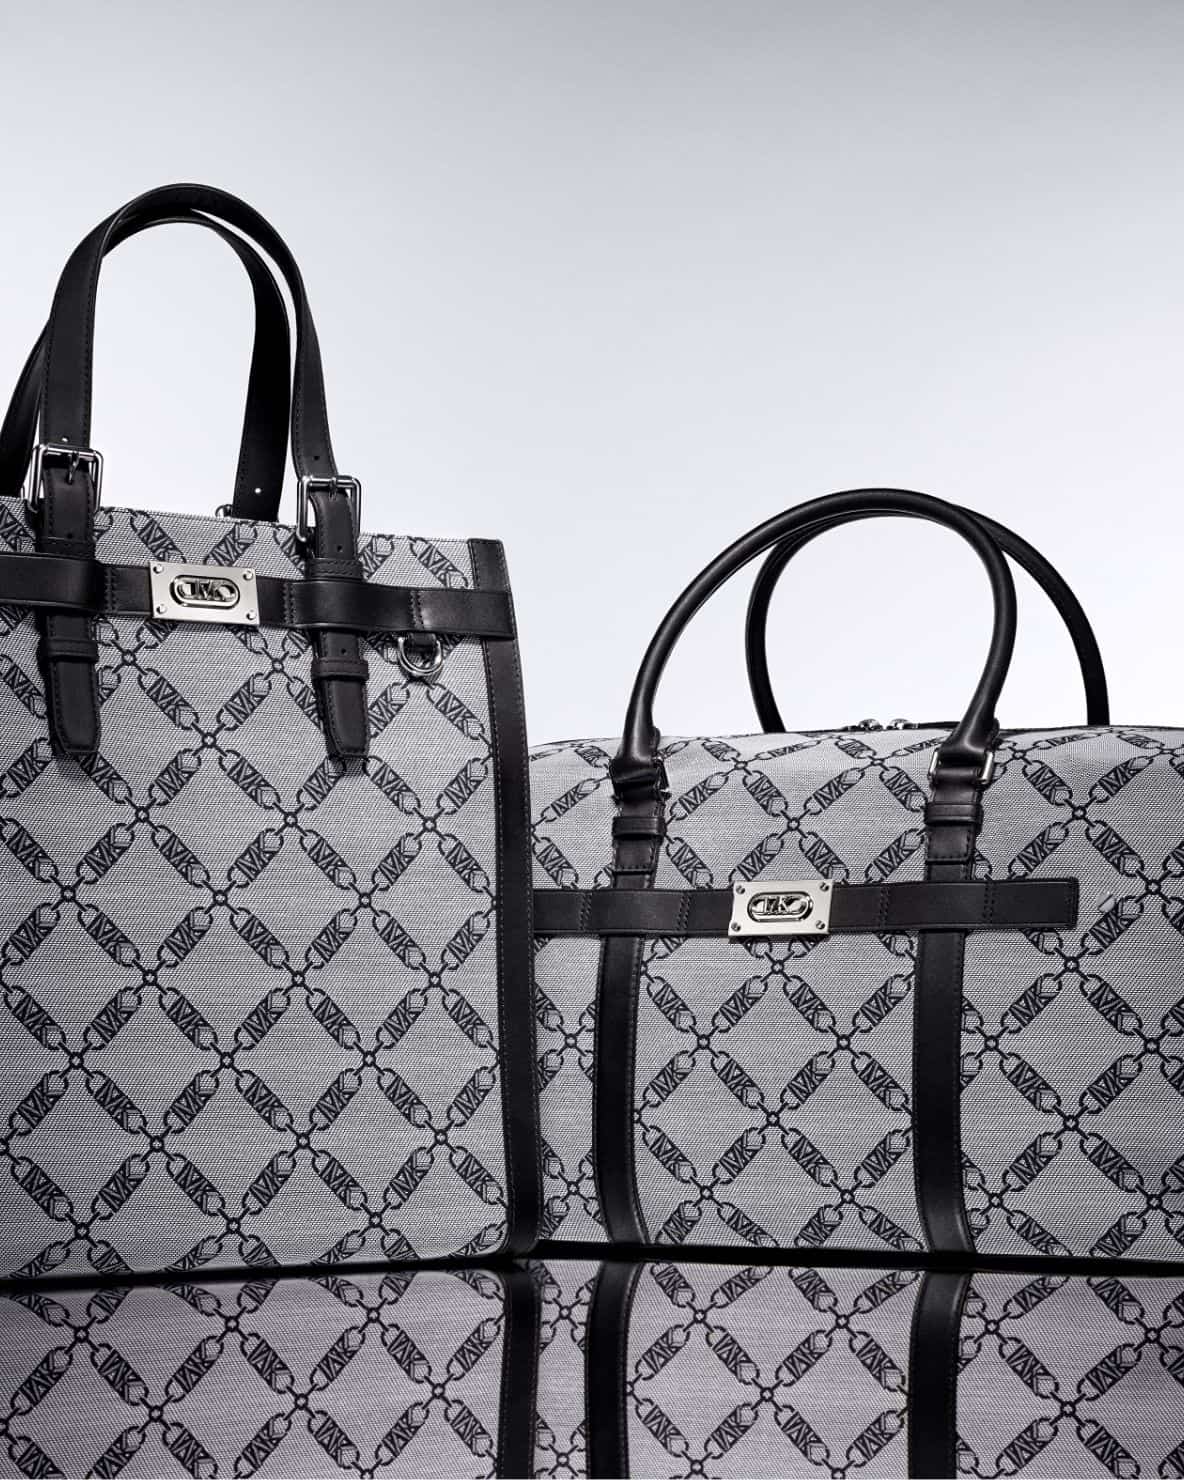 Designer Bags For Men | Michael Kors